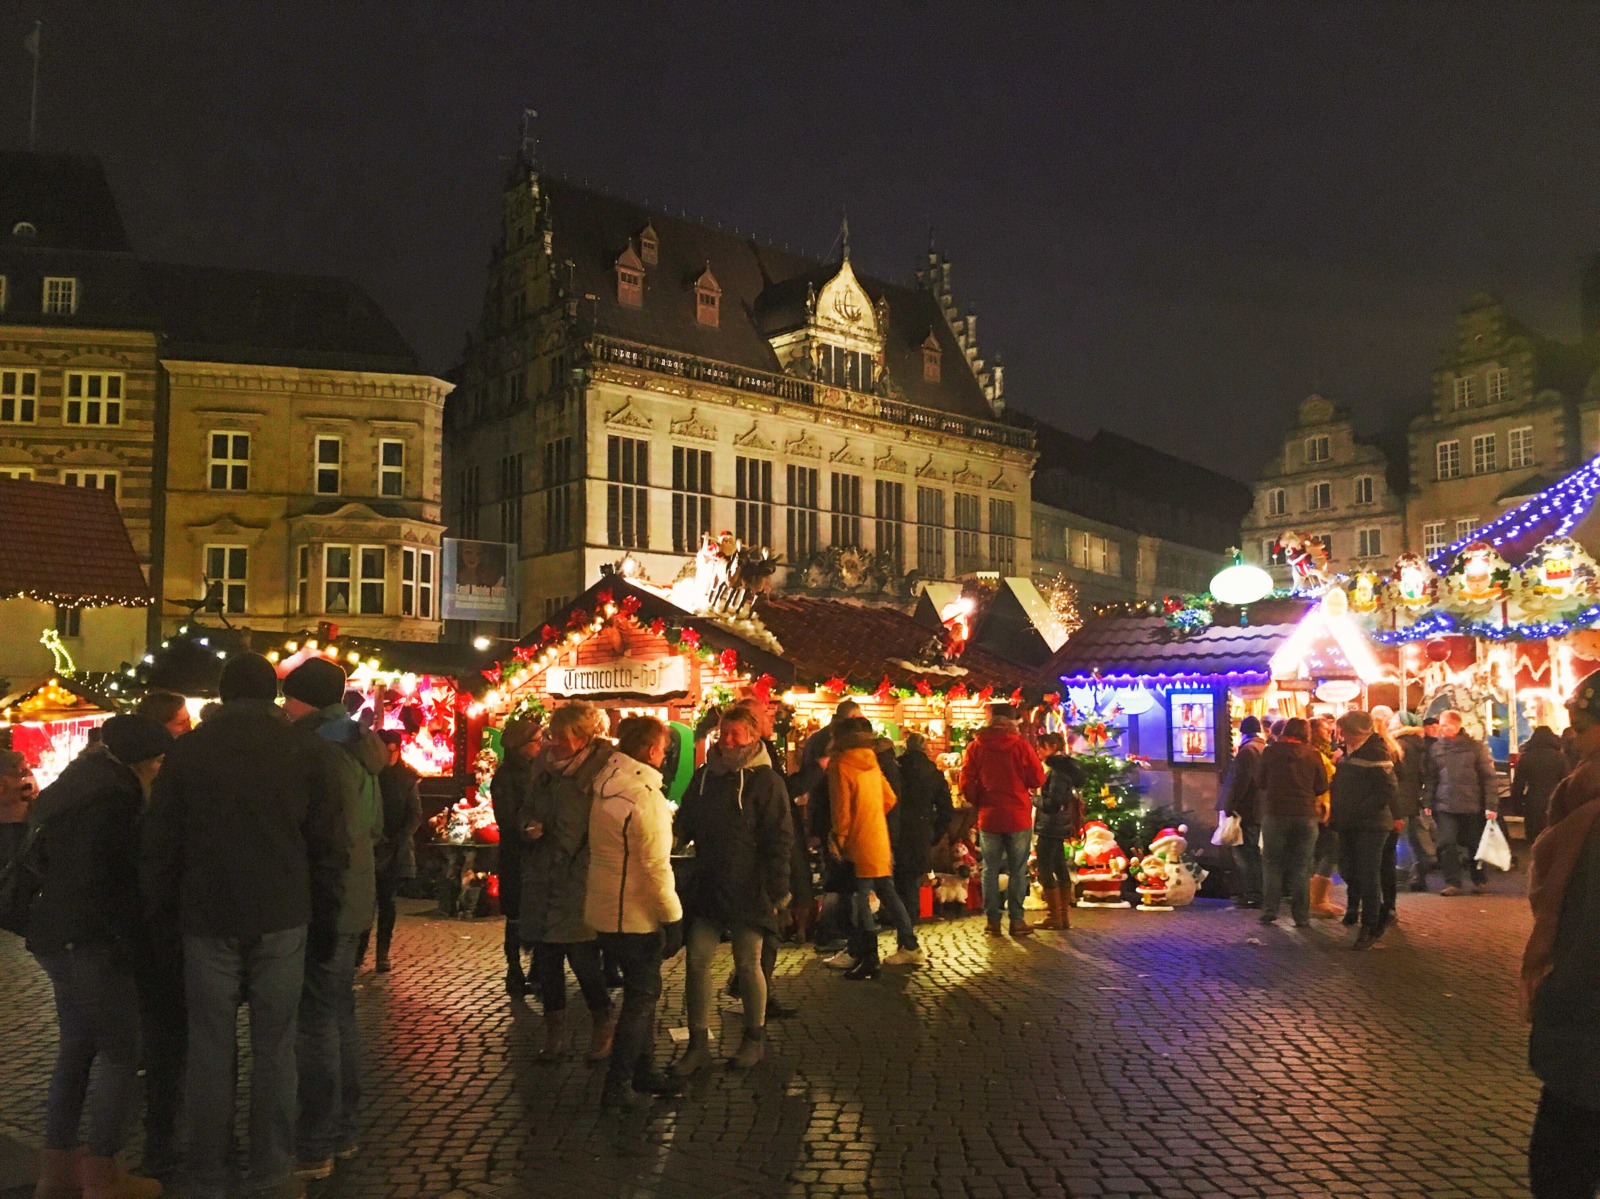 Christmas markets in Germany - Bremen by shinkaretskaya via Twenty20